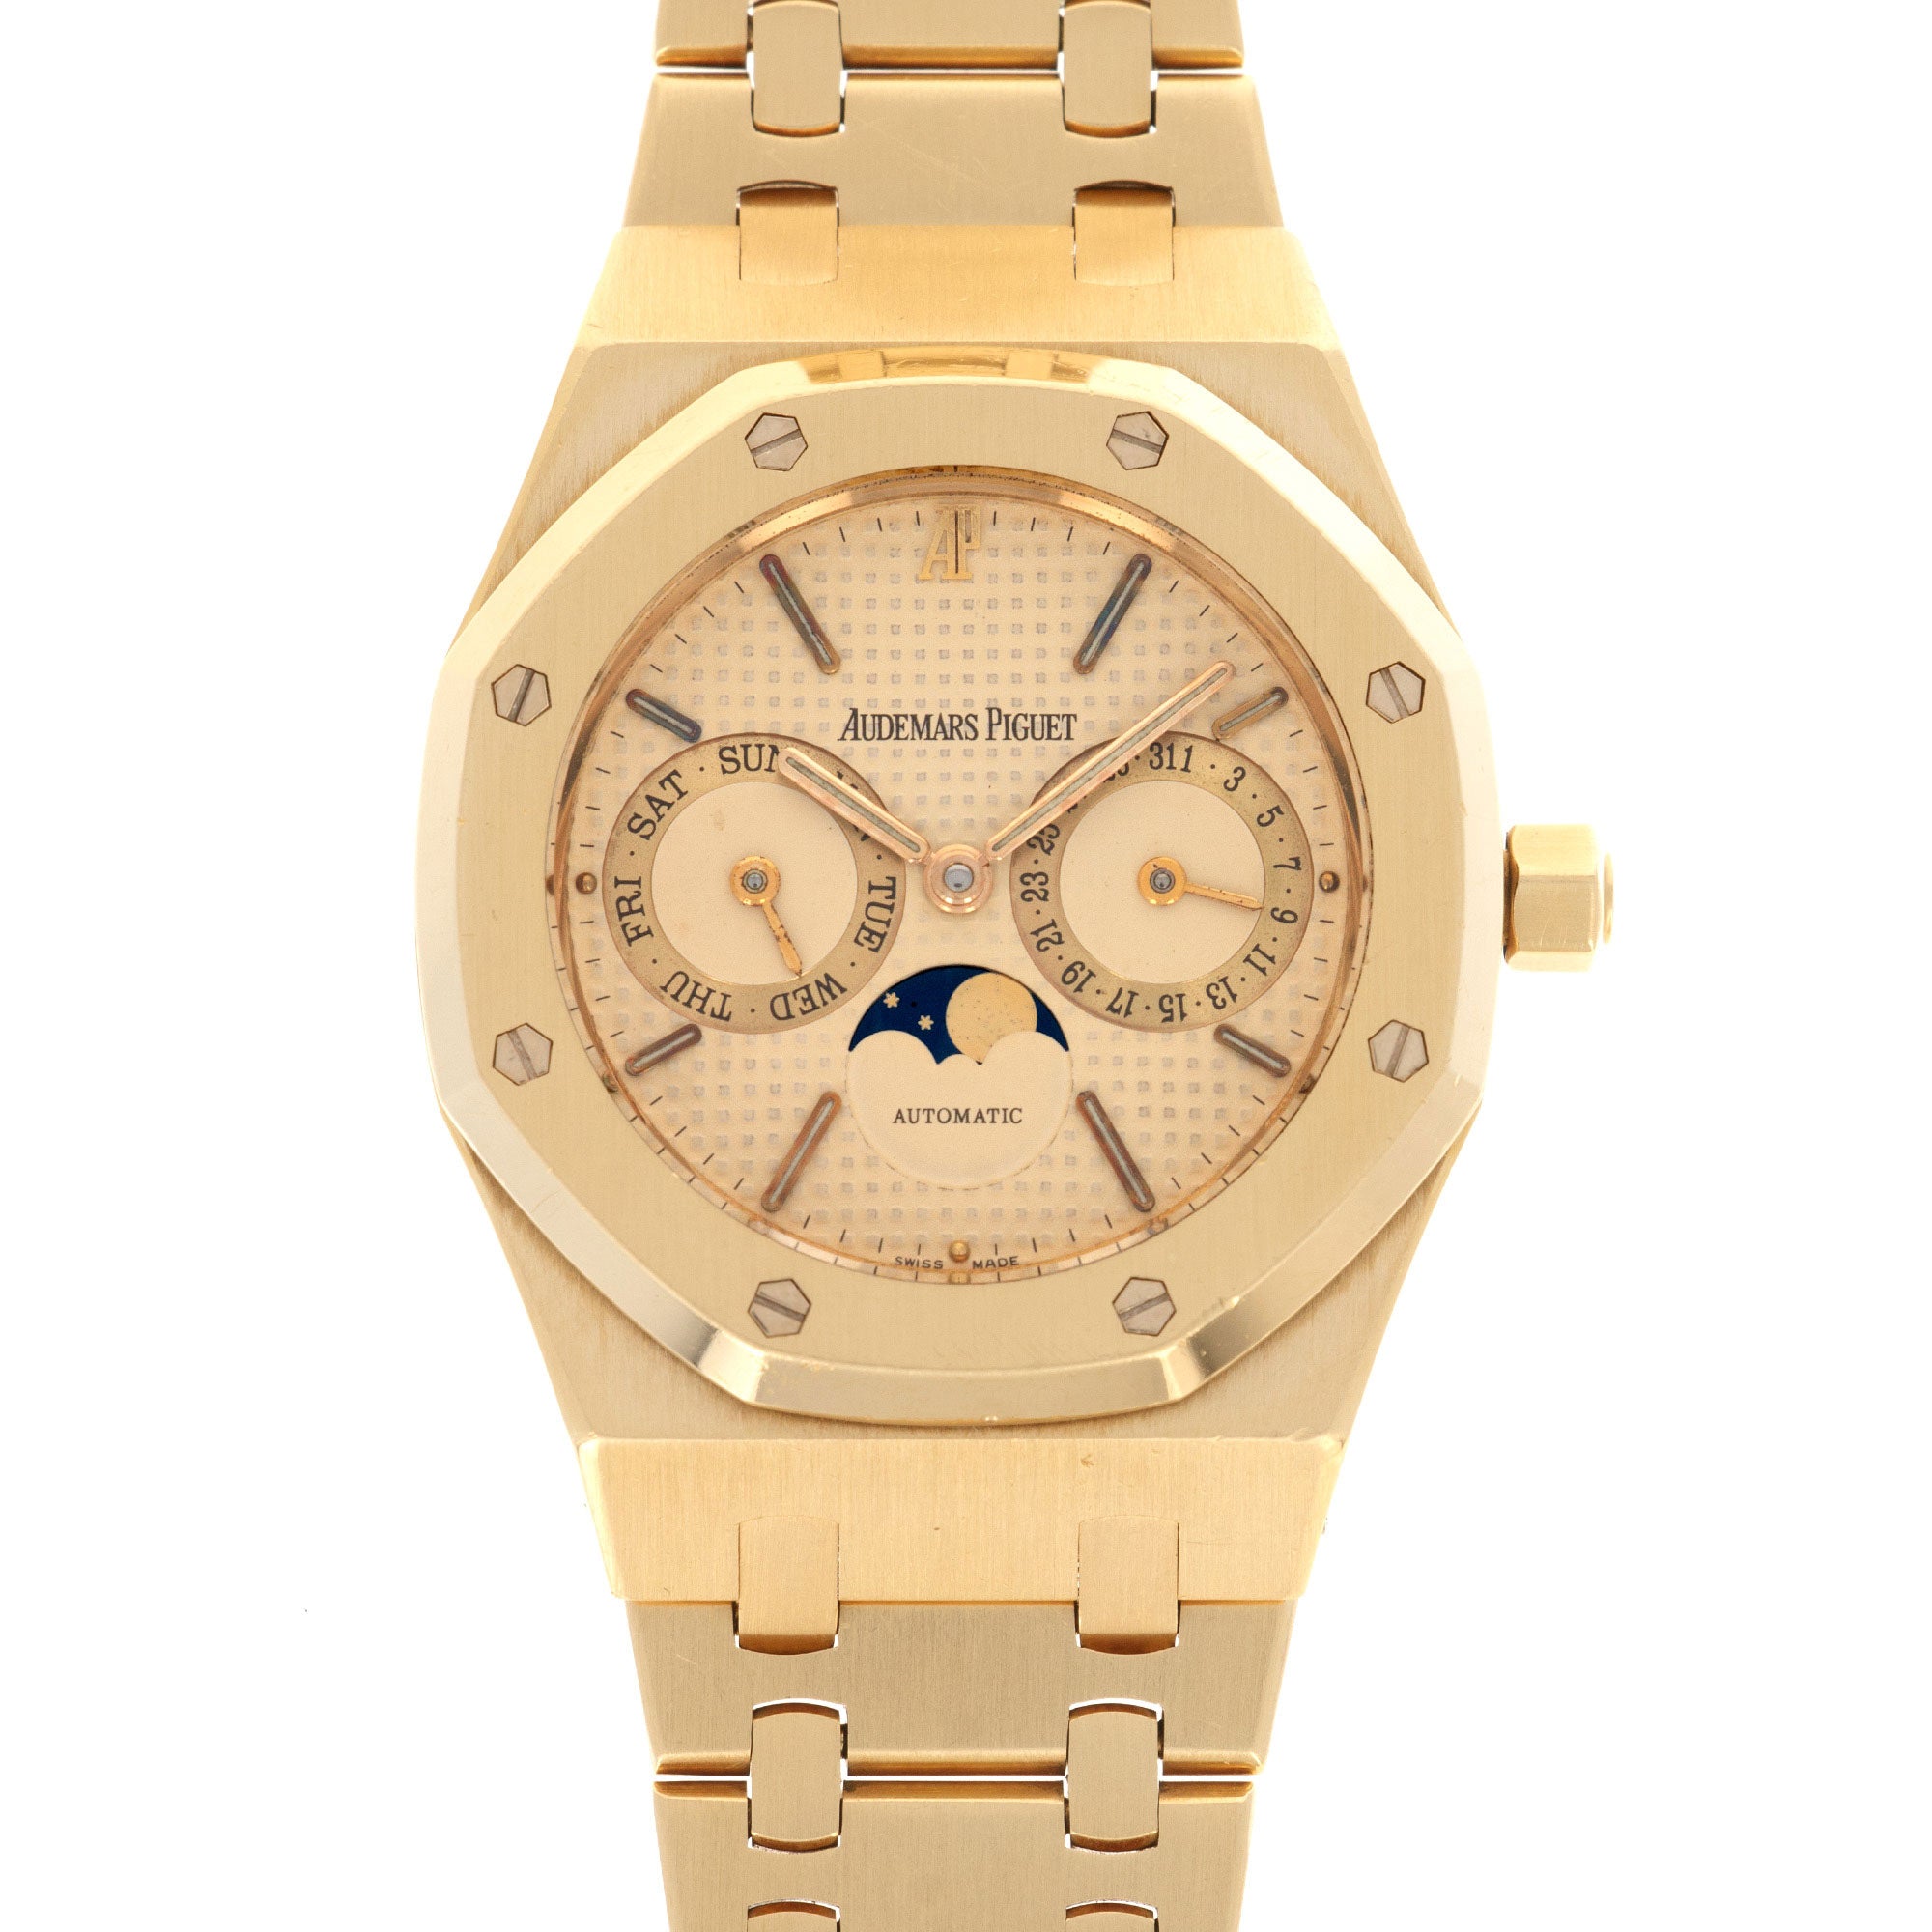 Audemars Piguet - Audemars Piguet Yellow Gold Royal Oak Moonphase Watch - The Keystone Watches